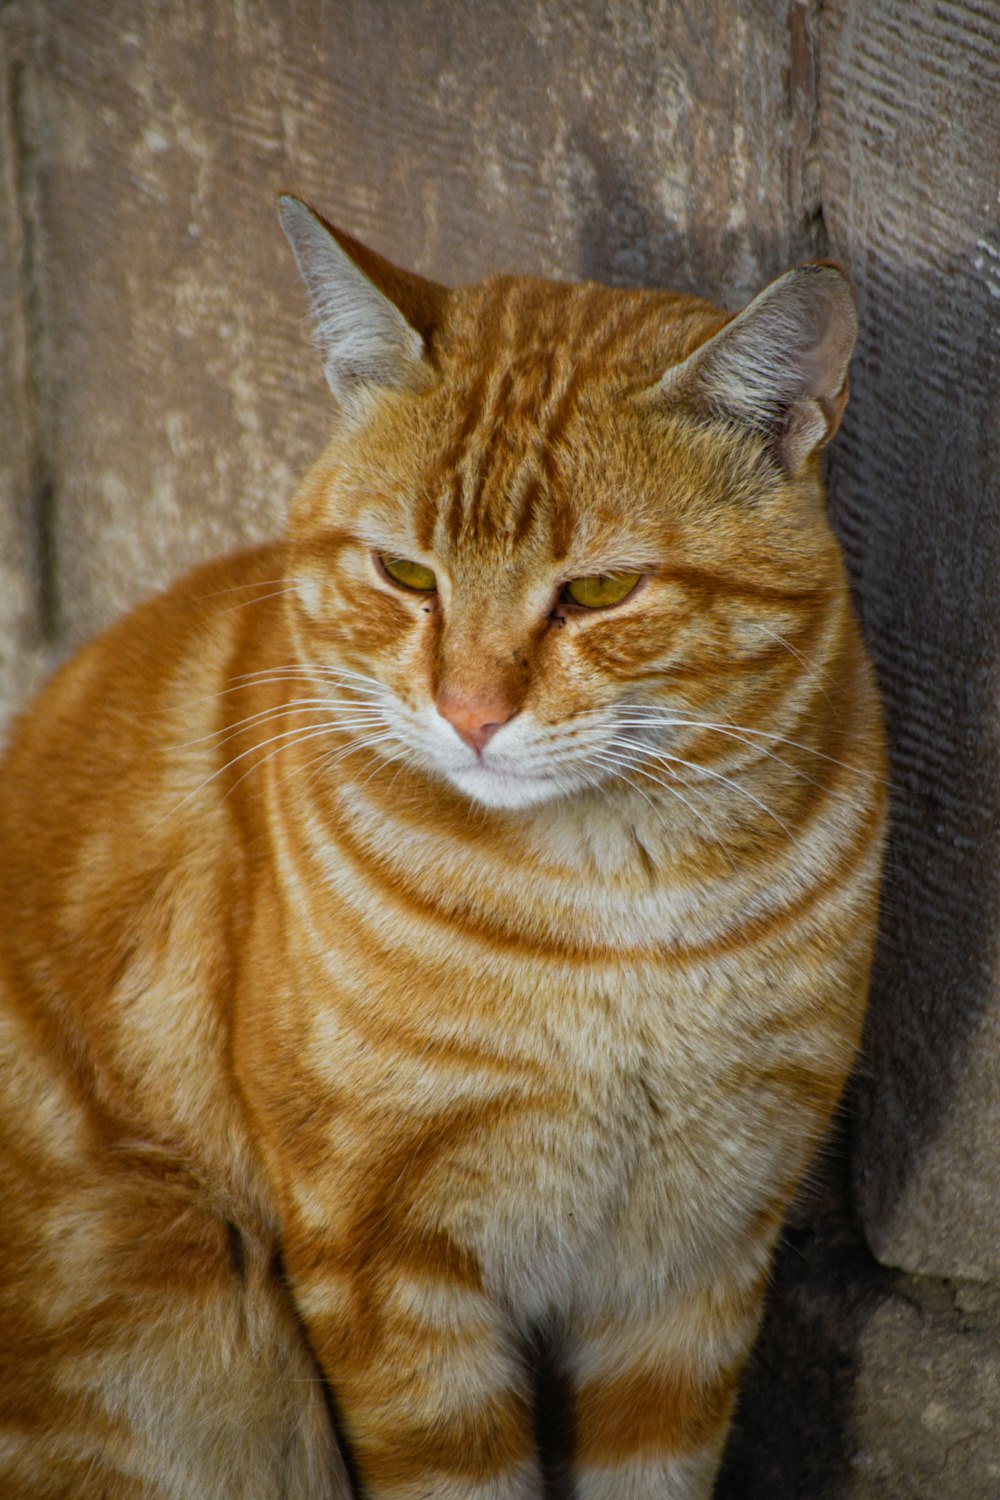 Gato Gris Con Amigo Conduce Coche Imagen de archivo - Imagen de licencia,  creativo: 213840455